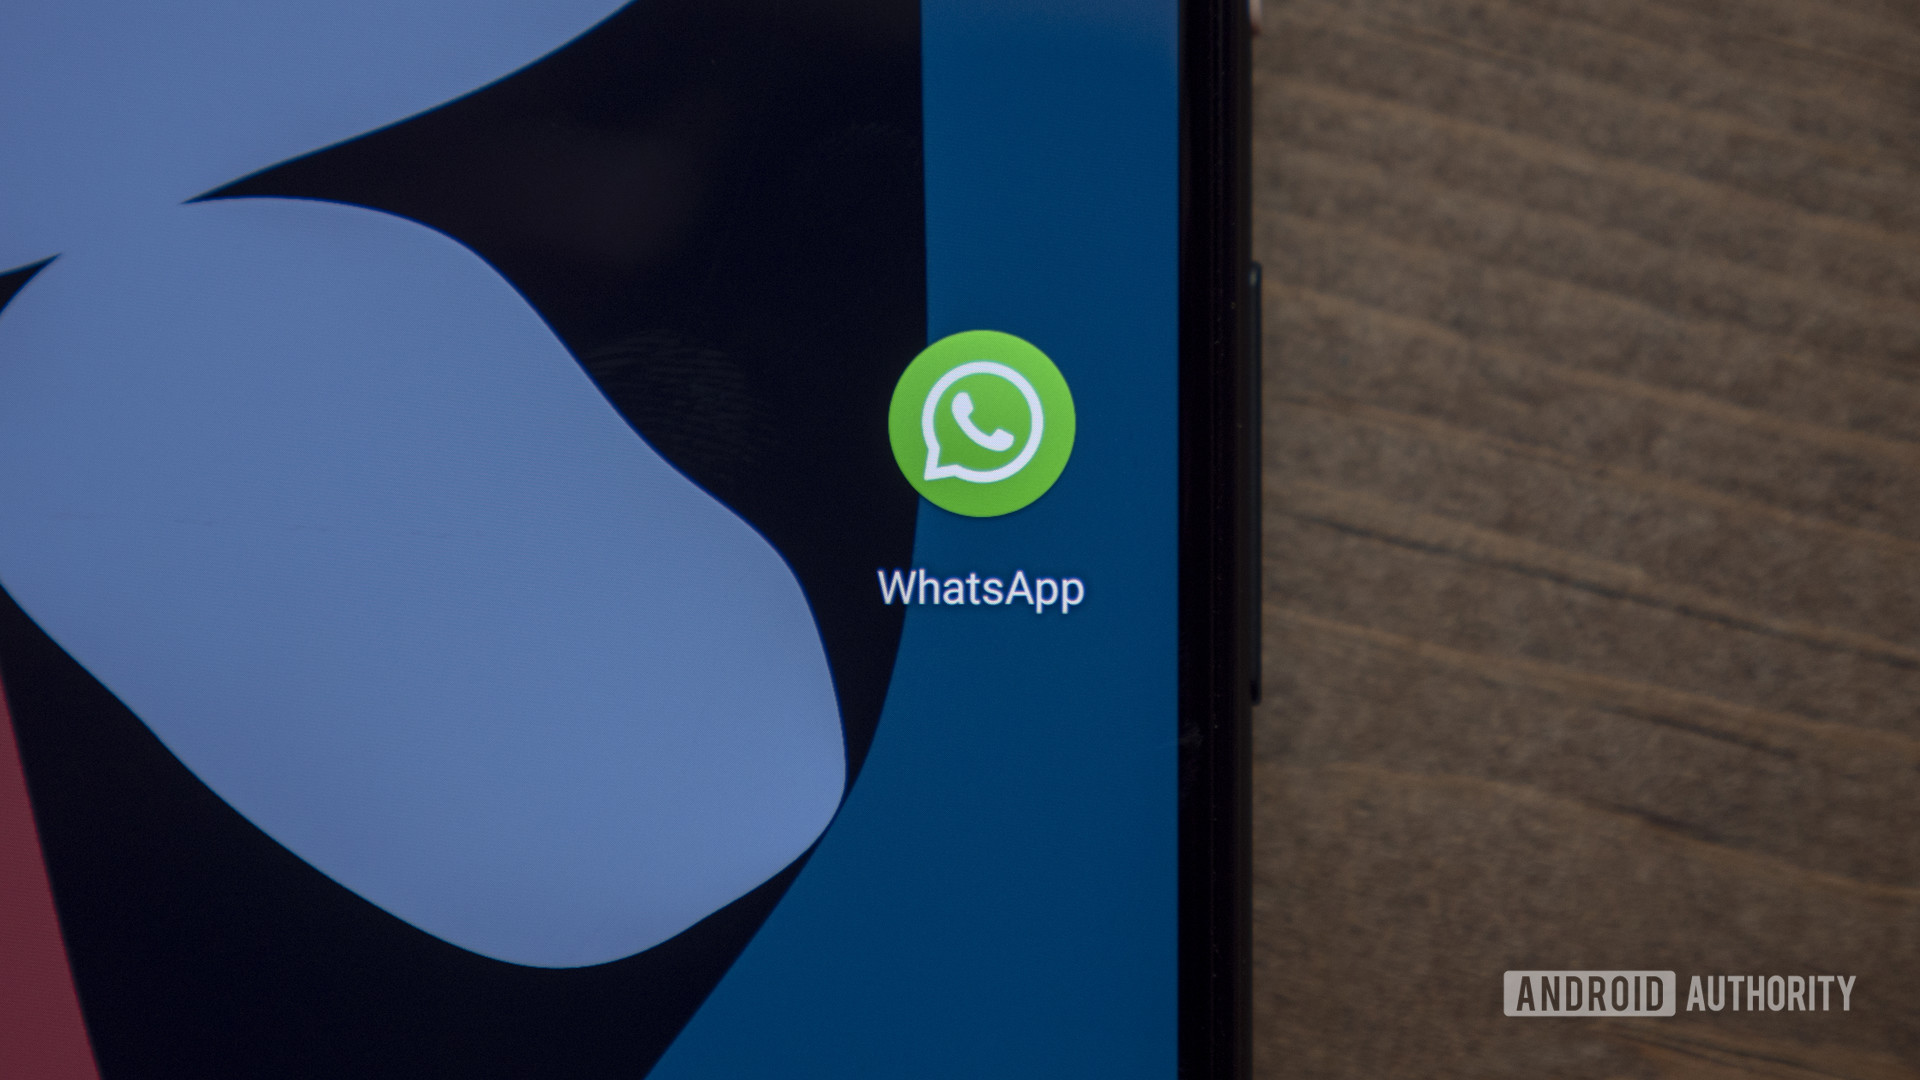 Если вы пользуетесь старым телефоном на базе Android, WhatsApp может скоро перестать работать на вашем устройстве